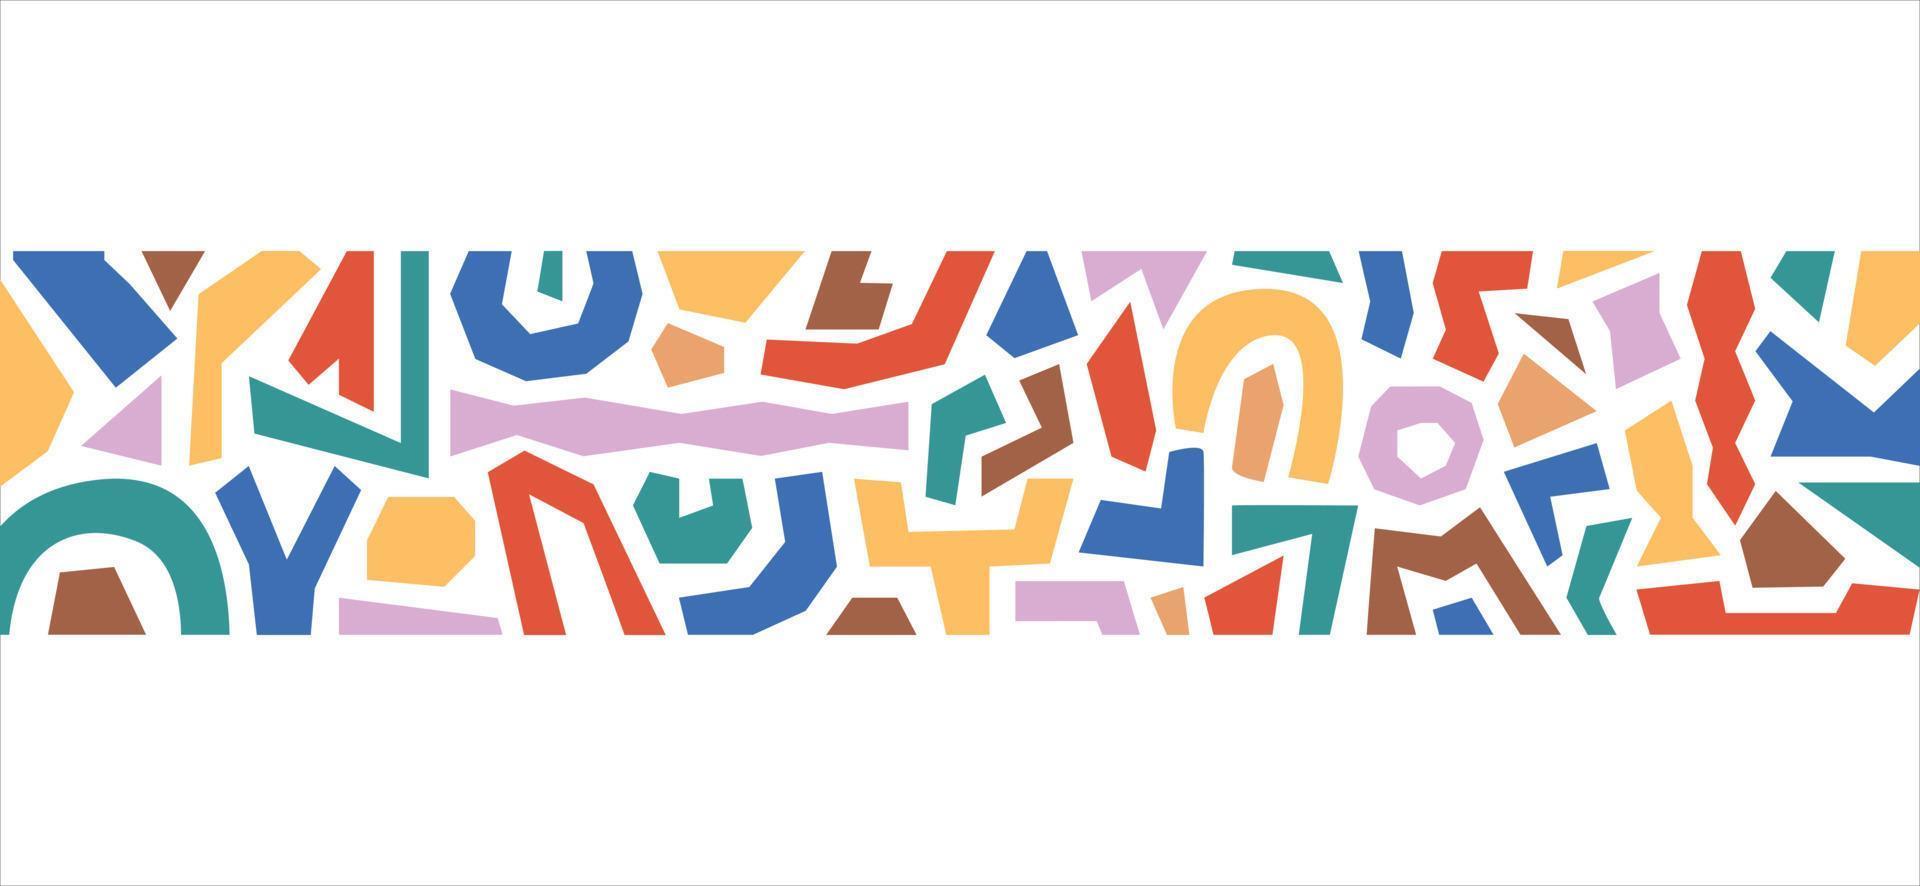 bordure abstraite moderne avec diverses formes géométriques colorées isolées sur fond blanc. motif horizontal minimaliste dessiné à la main. conception de vecteur